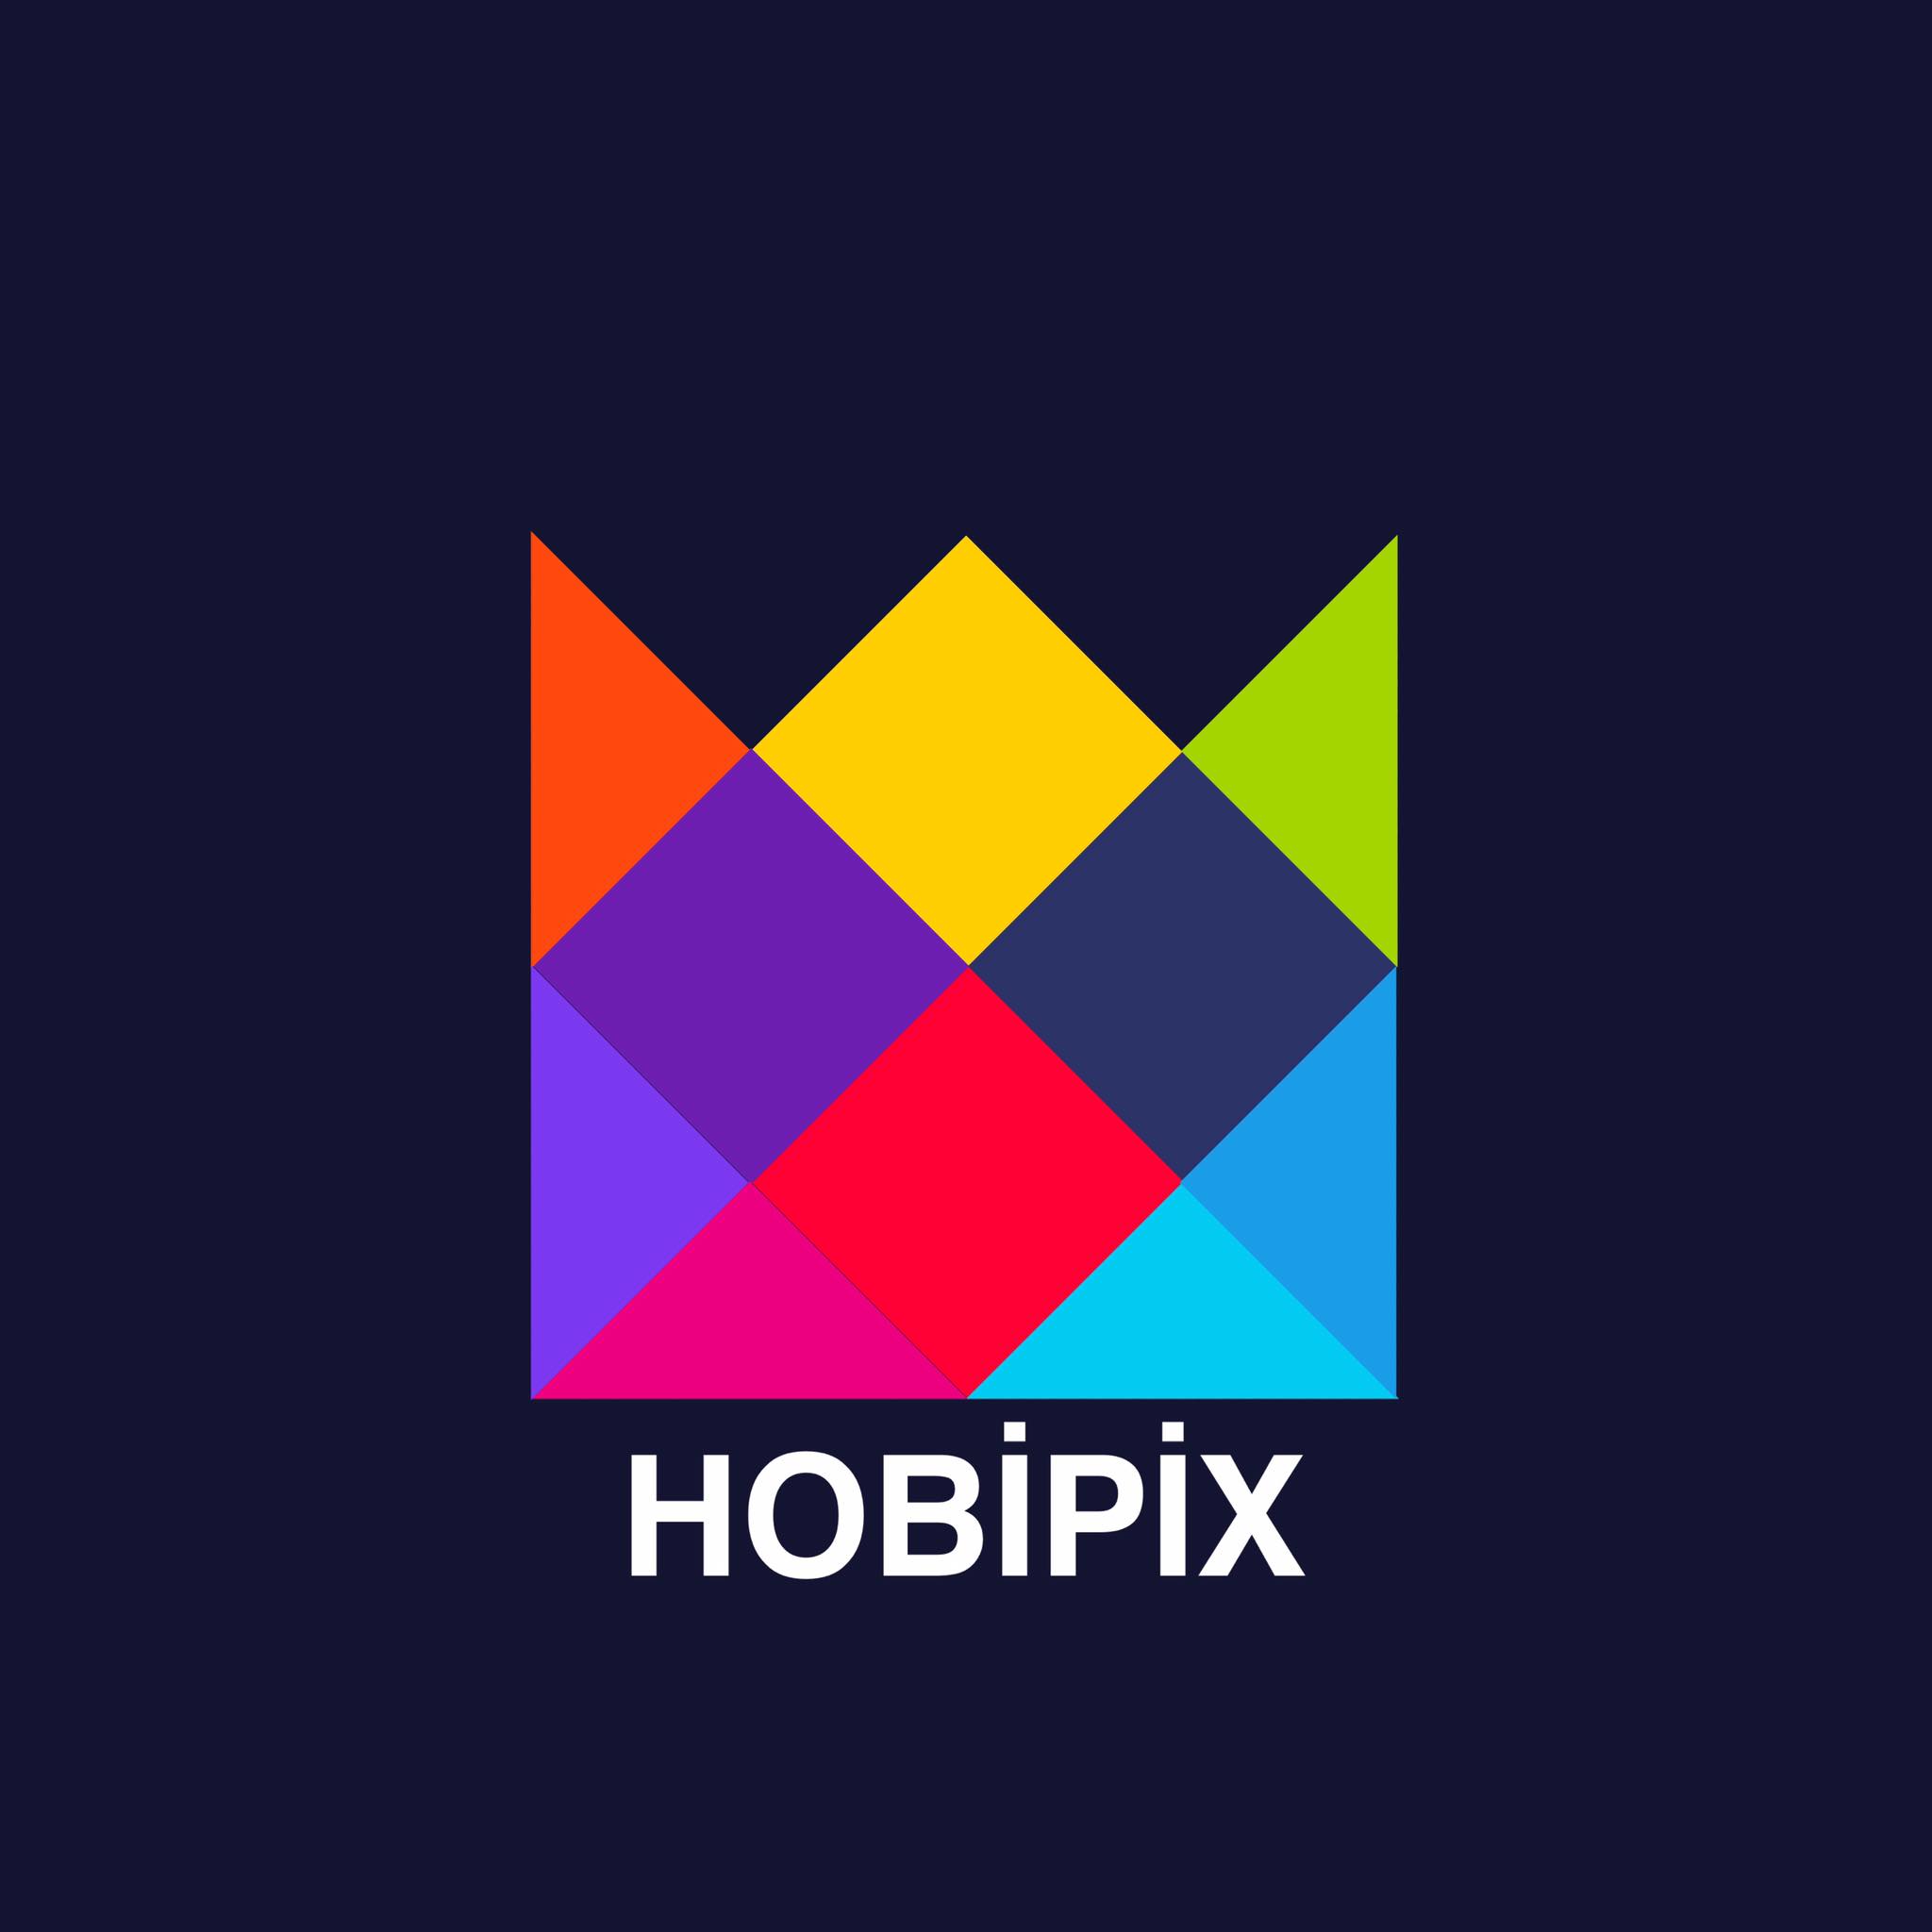 Hobipix